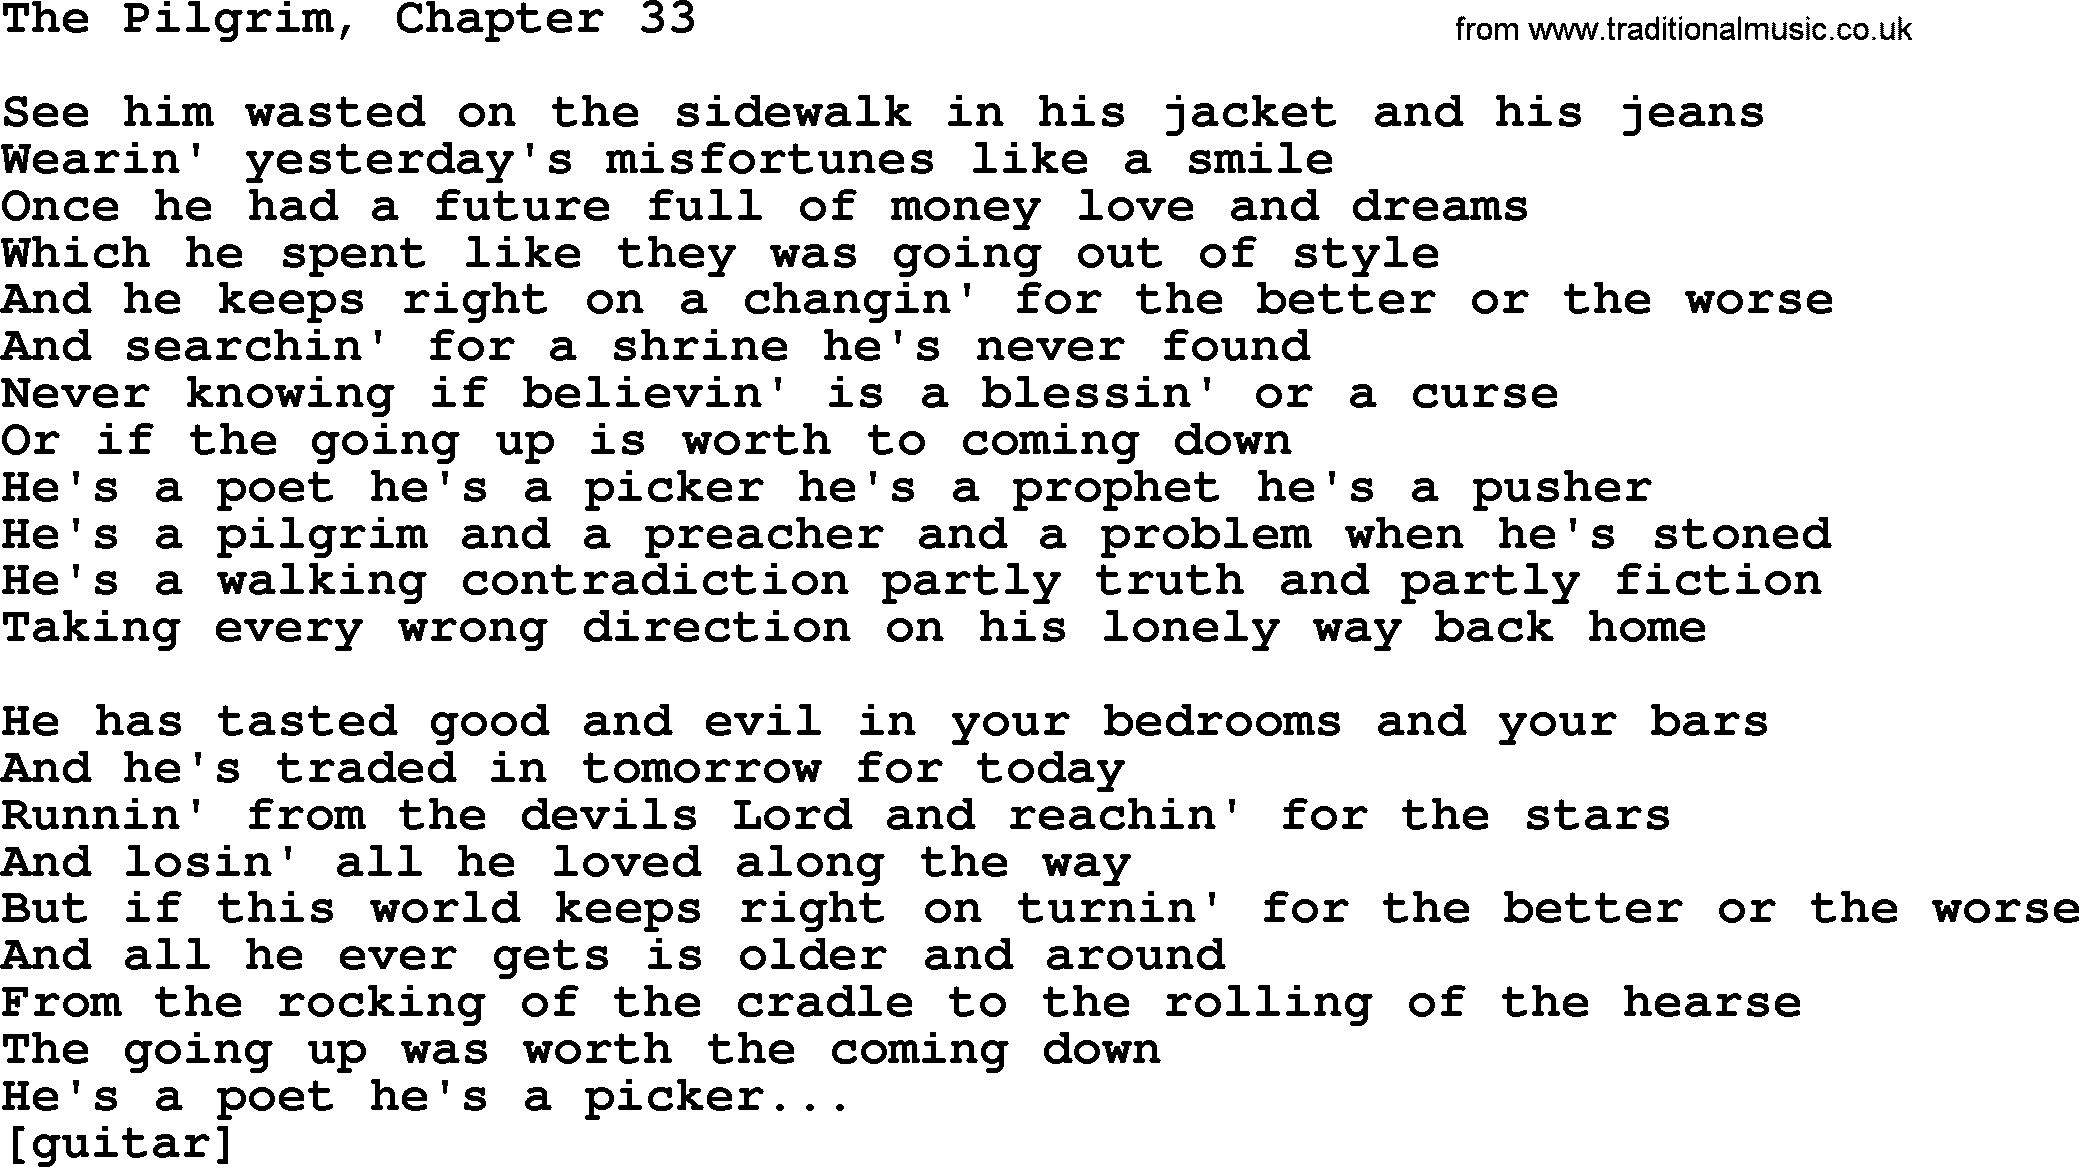 Willie Nelson song: The Pilgrim, Chapter 33 lyrics